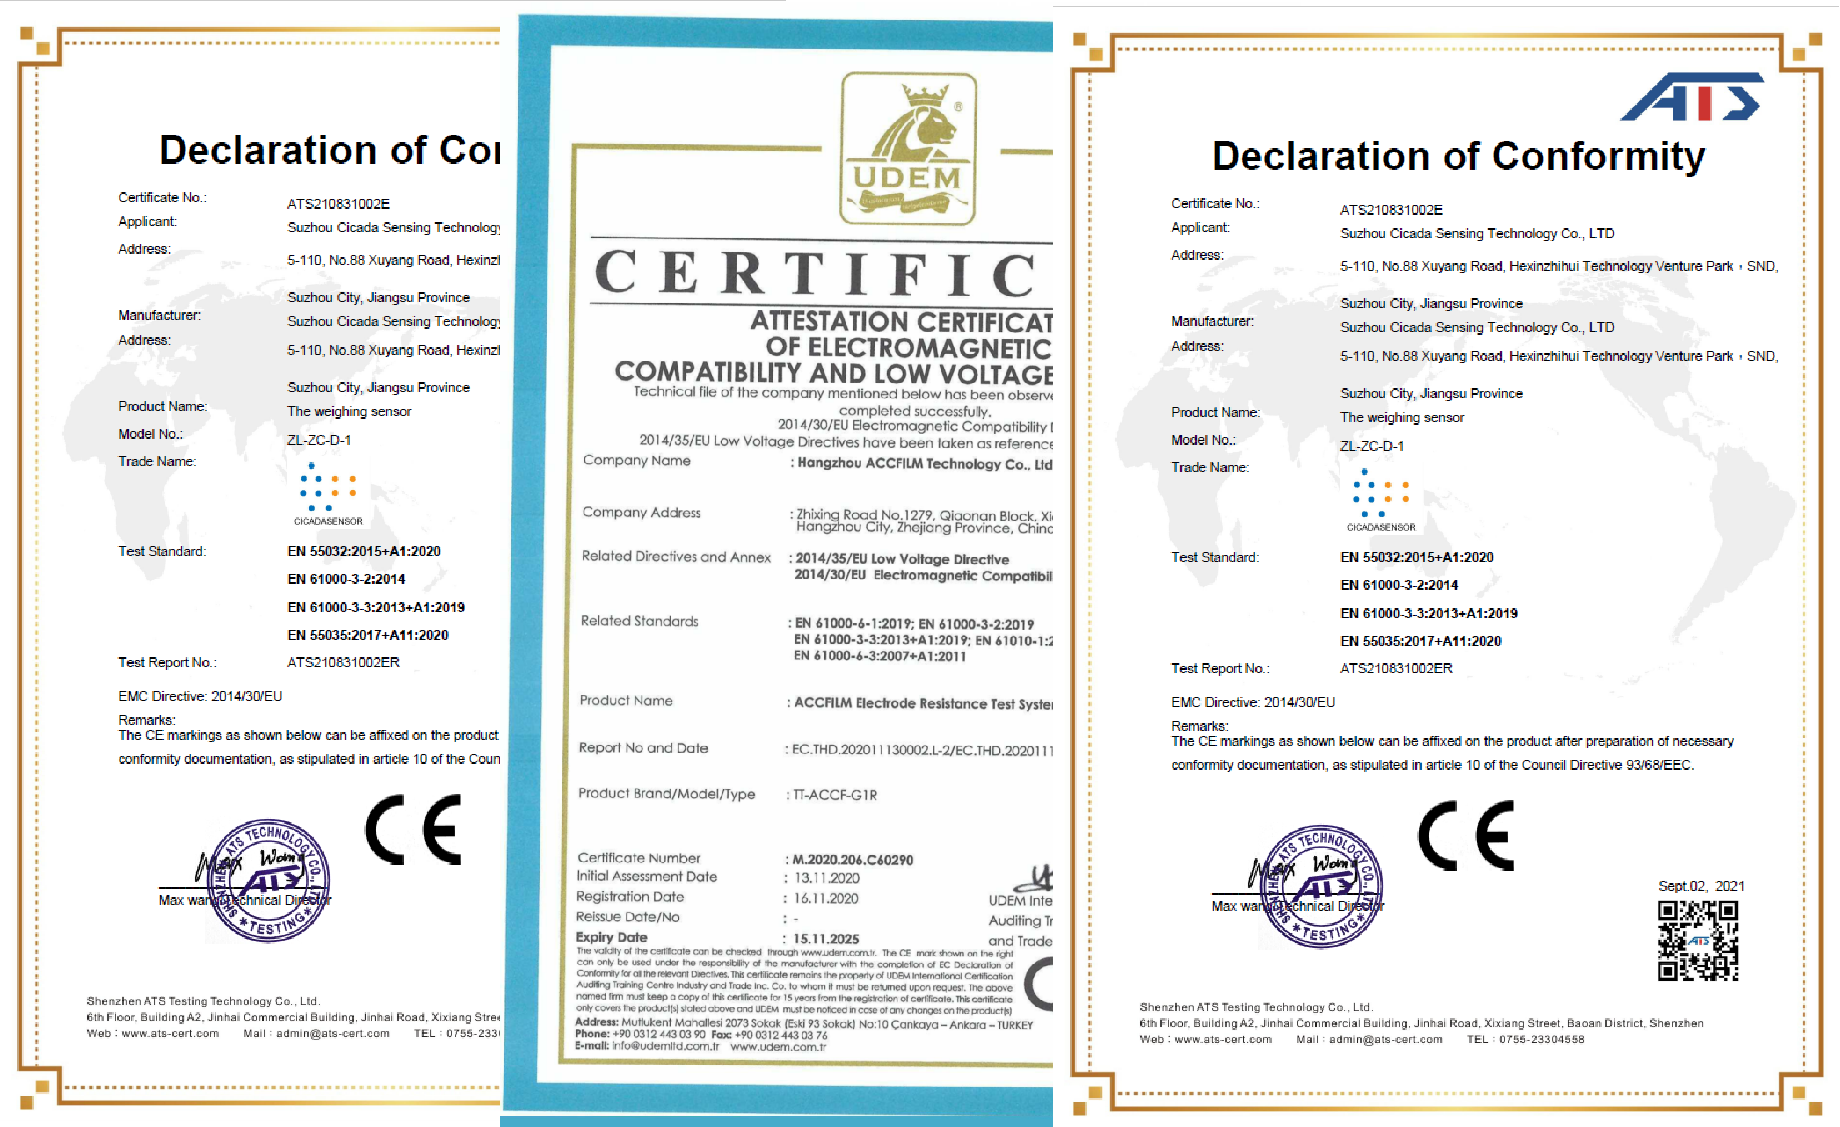 热烈祝贺我司多款产品顺利通过CE认证并取得证书- 川源科技